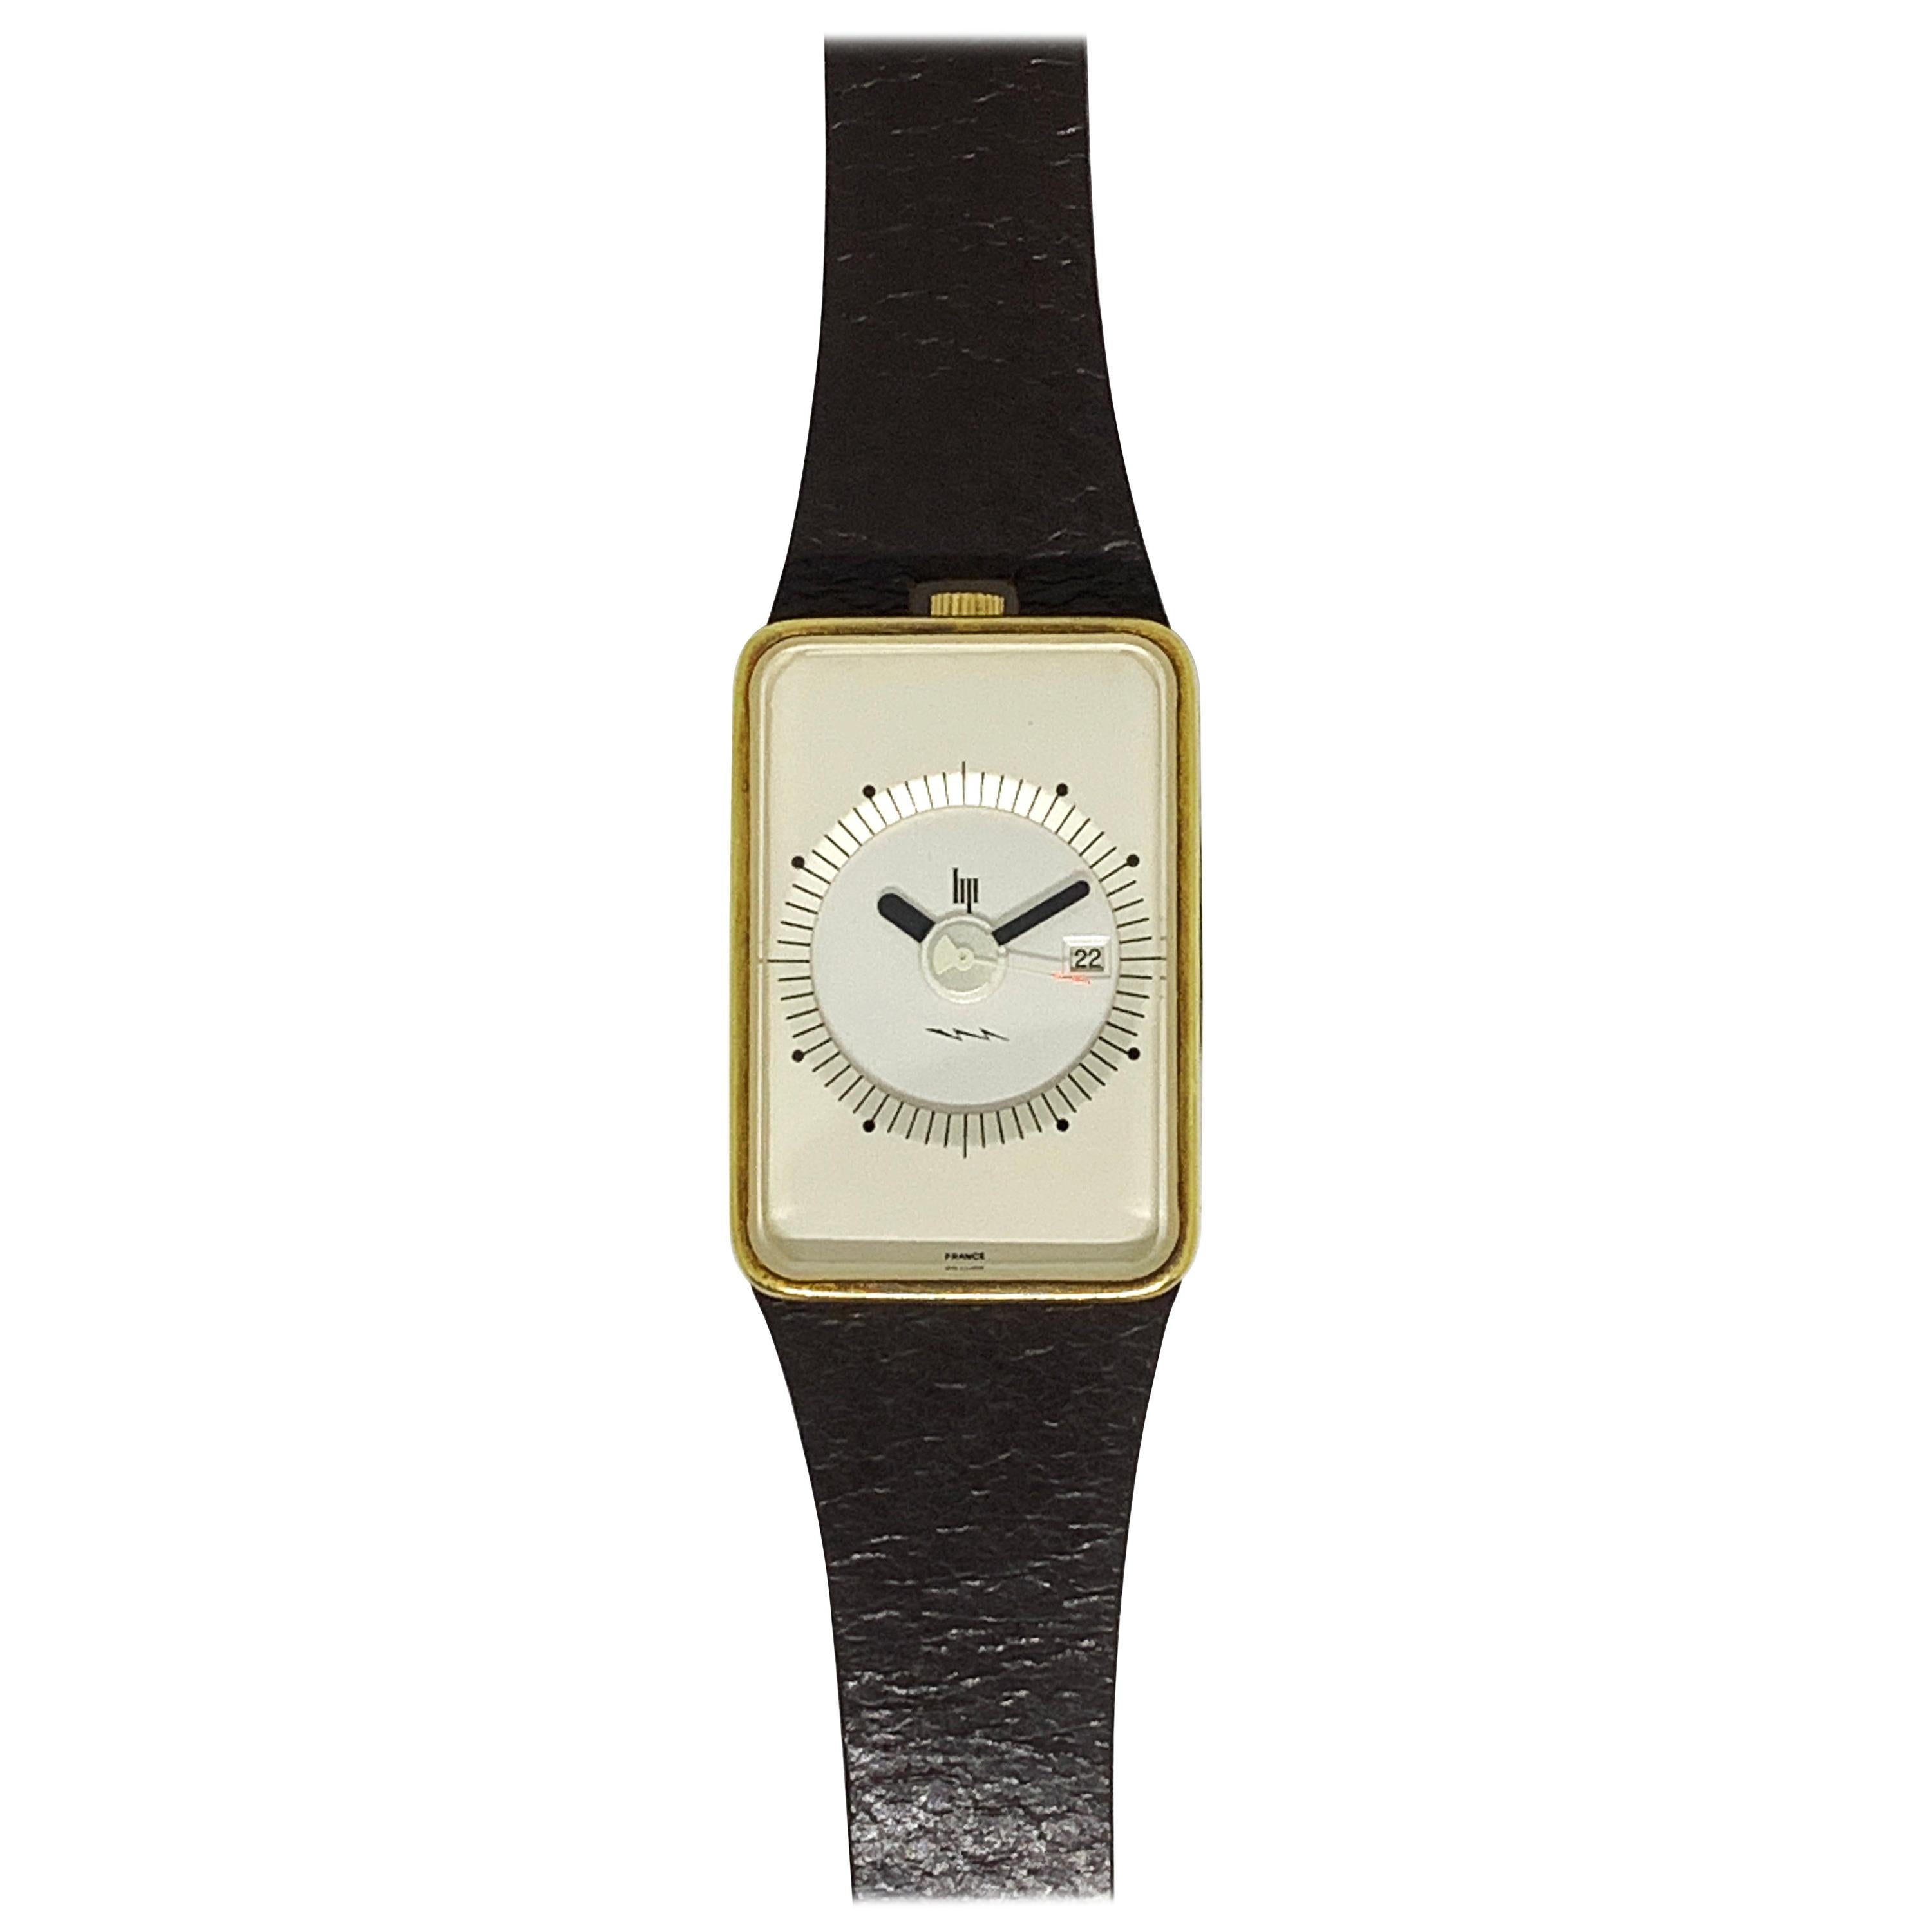 LIP Frigidaire Watch Design Roger Heel For Sale